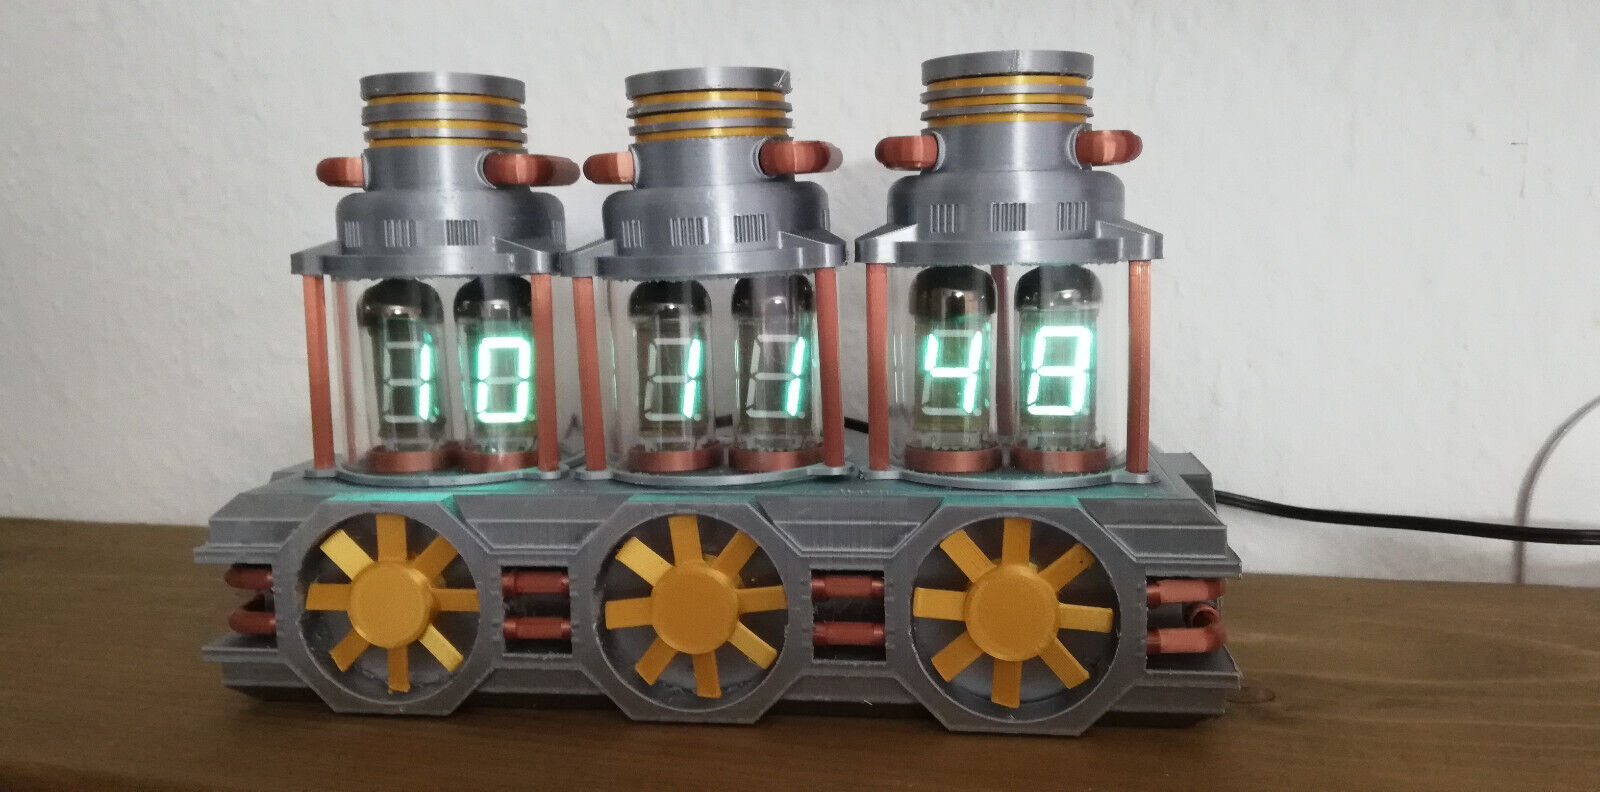 VFD uhr clock mit IV-11 Röhren komplett Steampunk Nixie steampunk